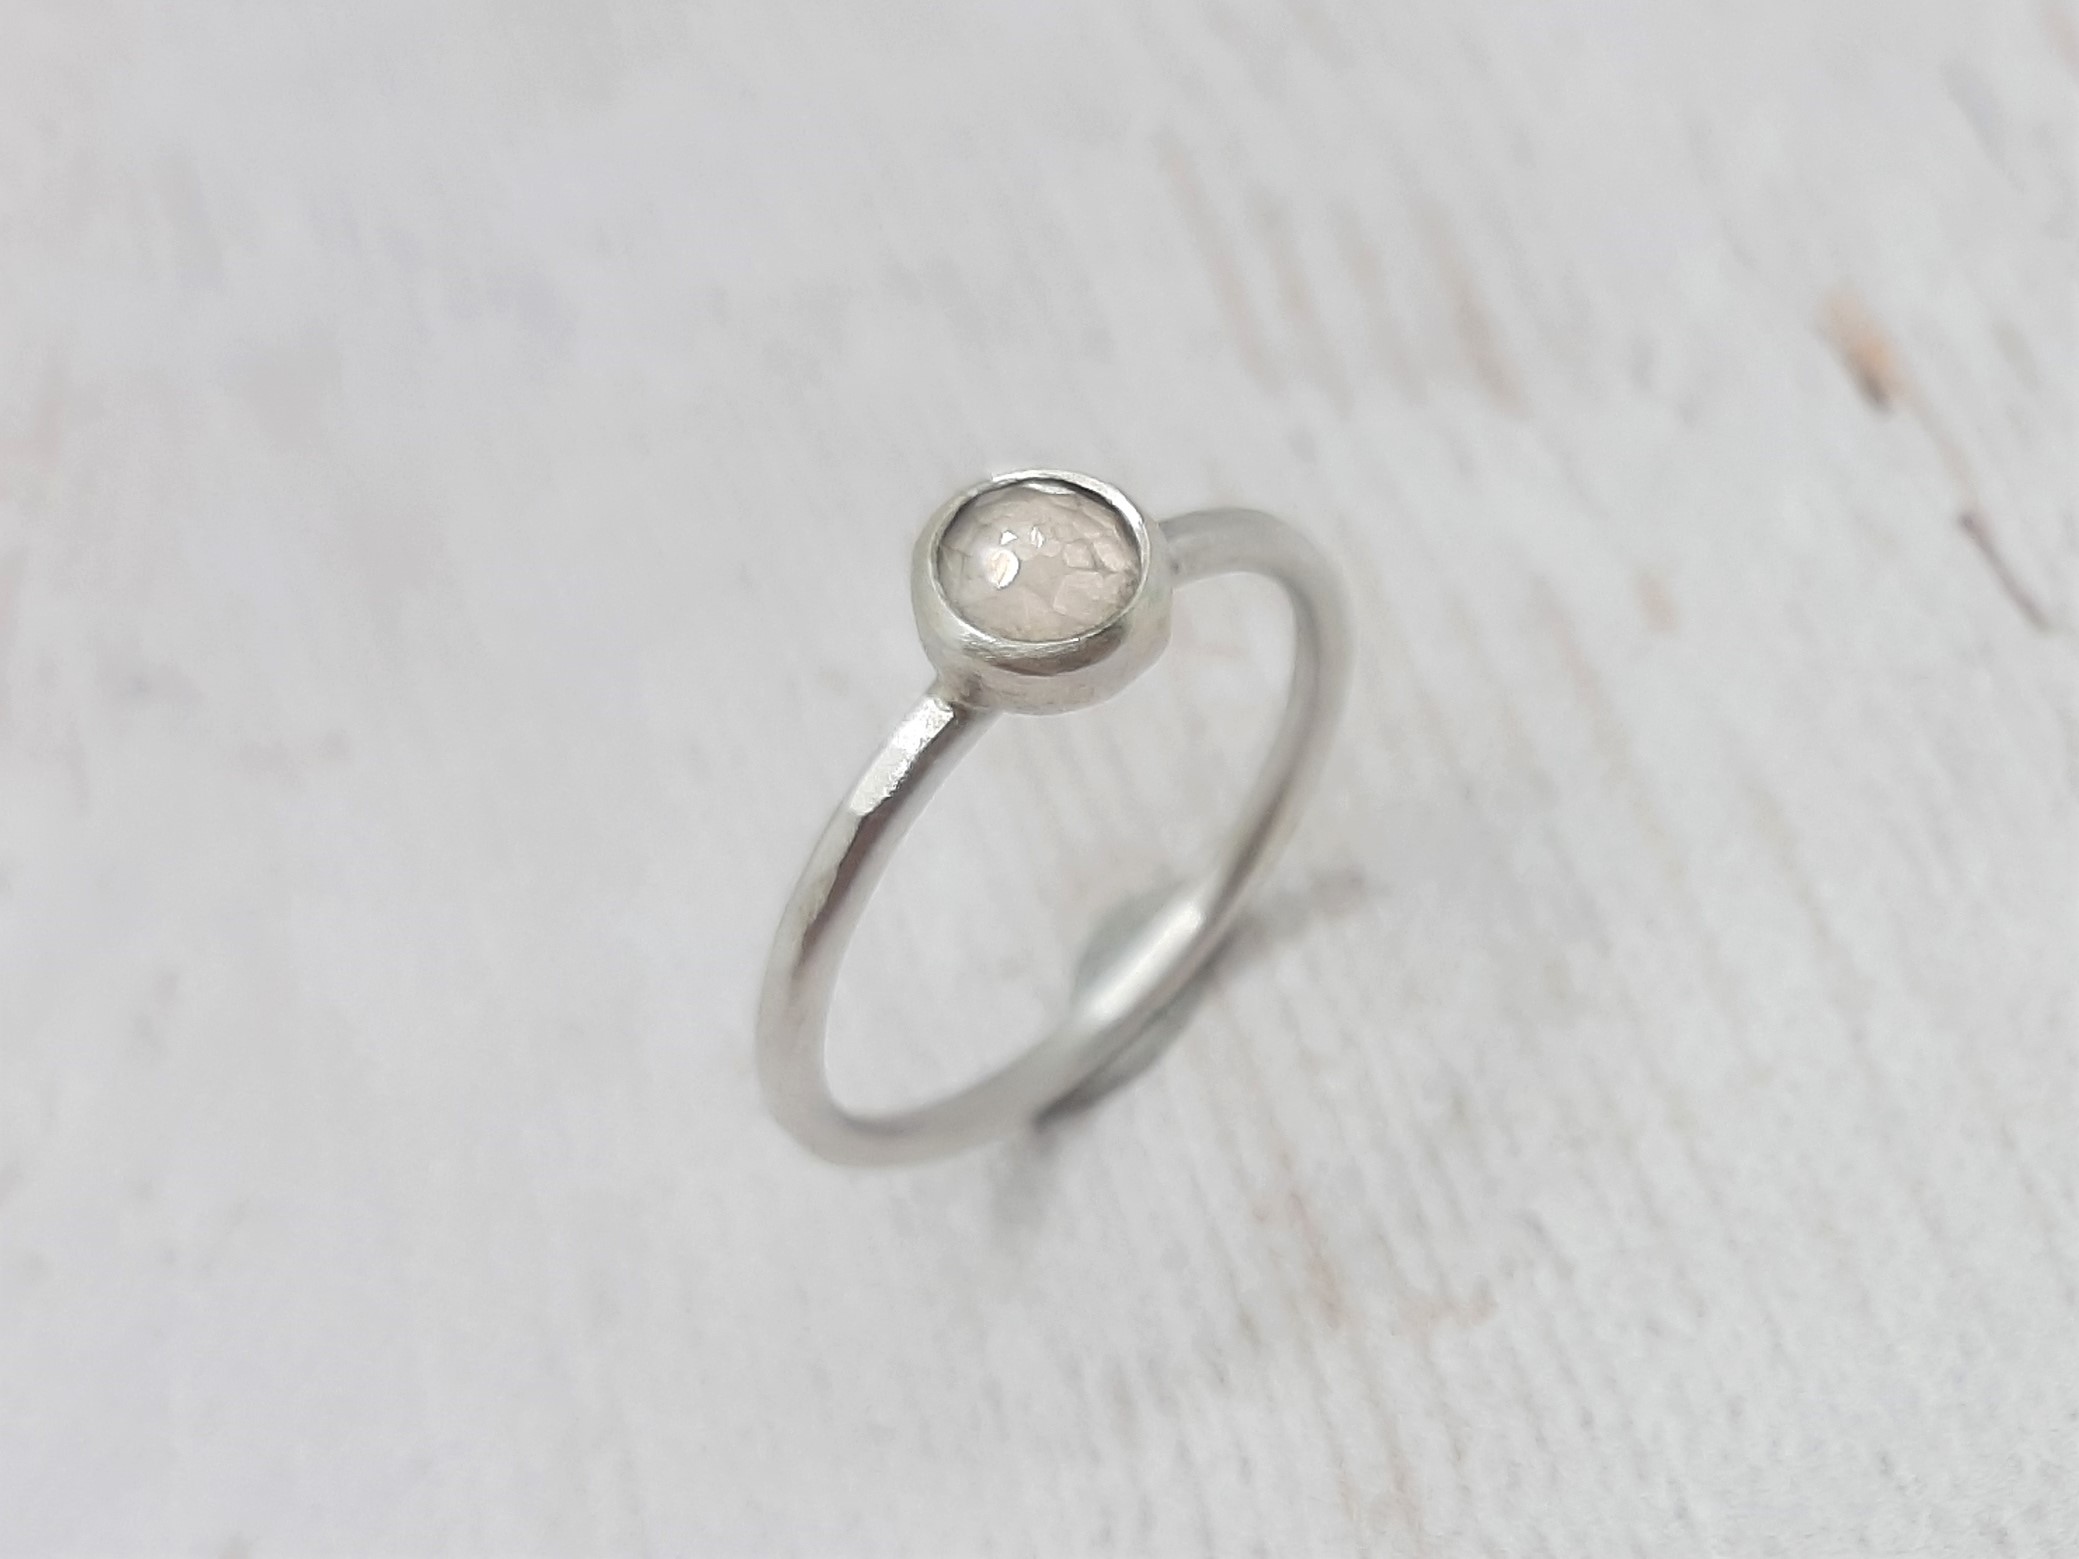 Rózsakvarc ezüst gyűrű 